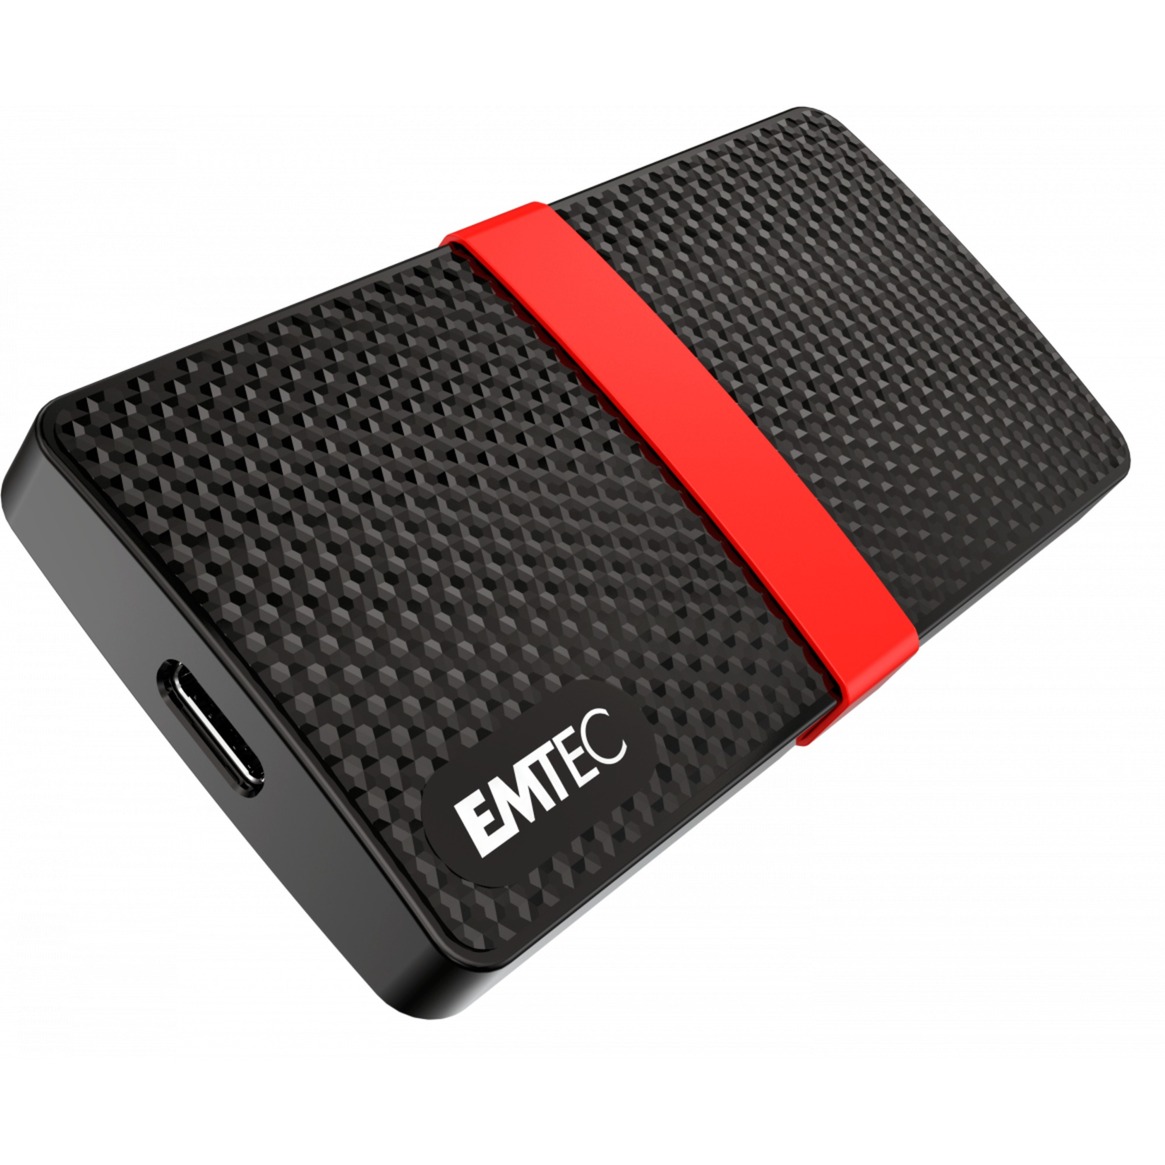 Image of Alternate - X200 Portable SSD 512 GB, Externe SSD online einkaufen bei Alternate